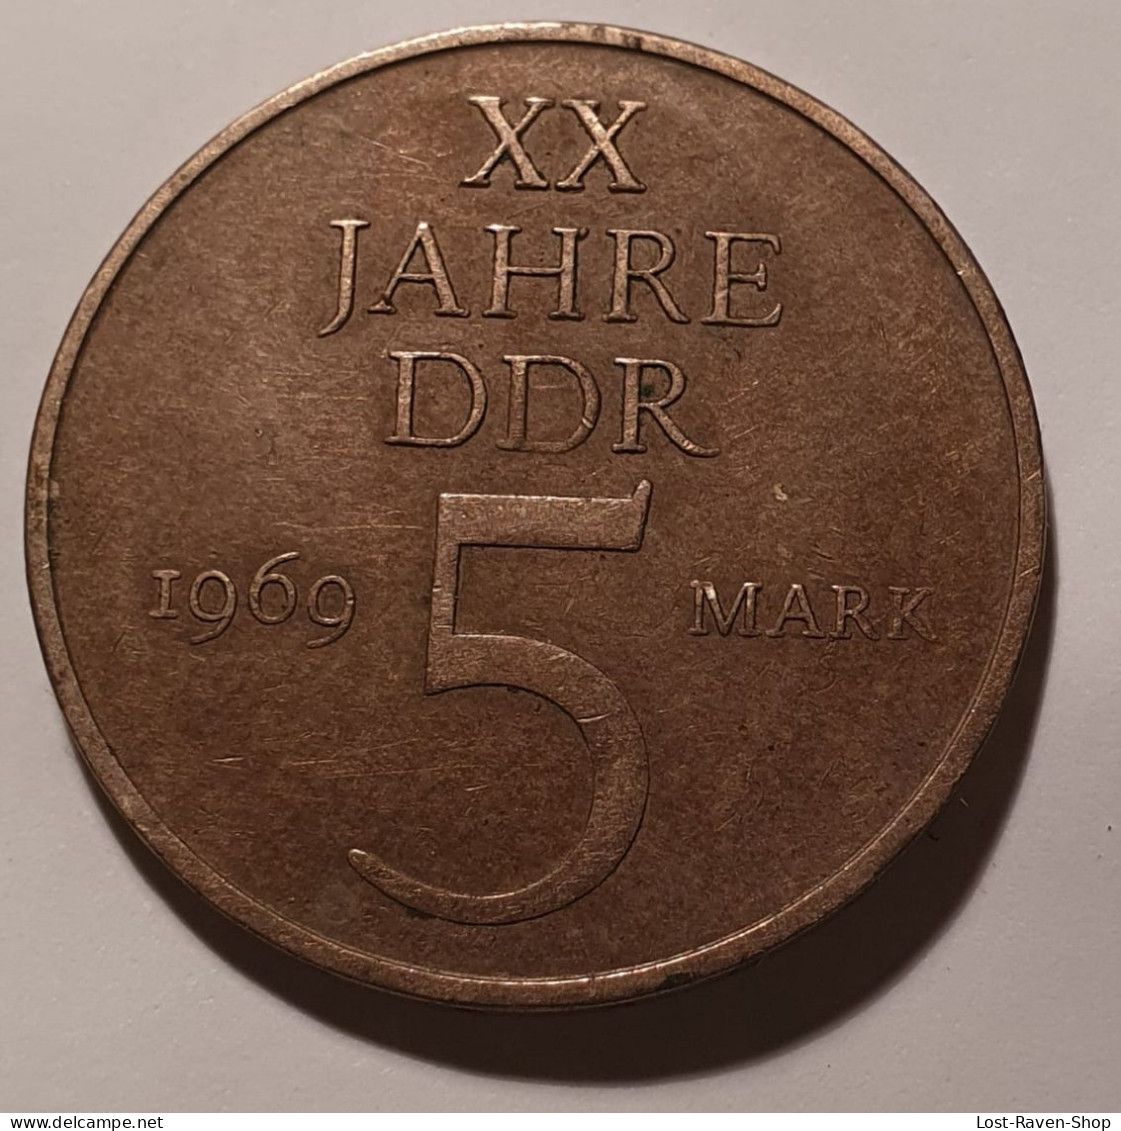 5 Mark - XX Jahre DDR - 1969 - 5 Marcos